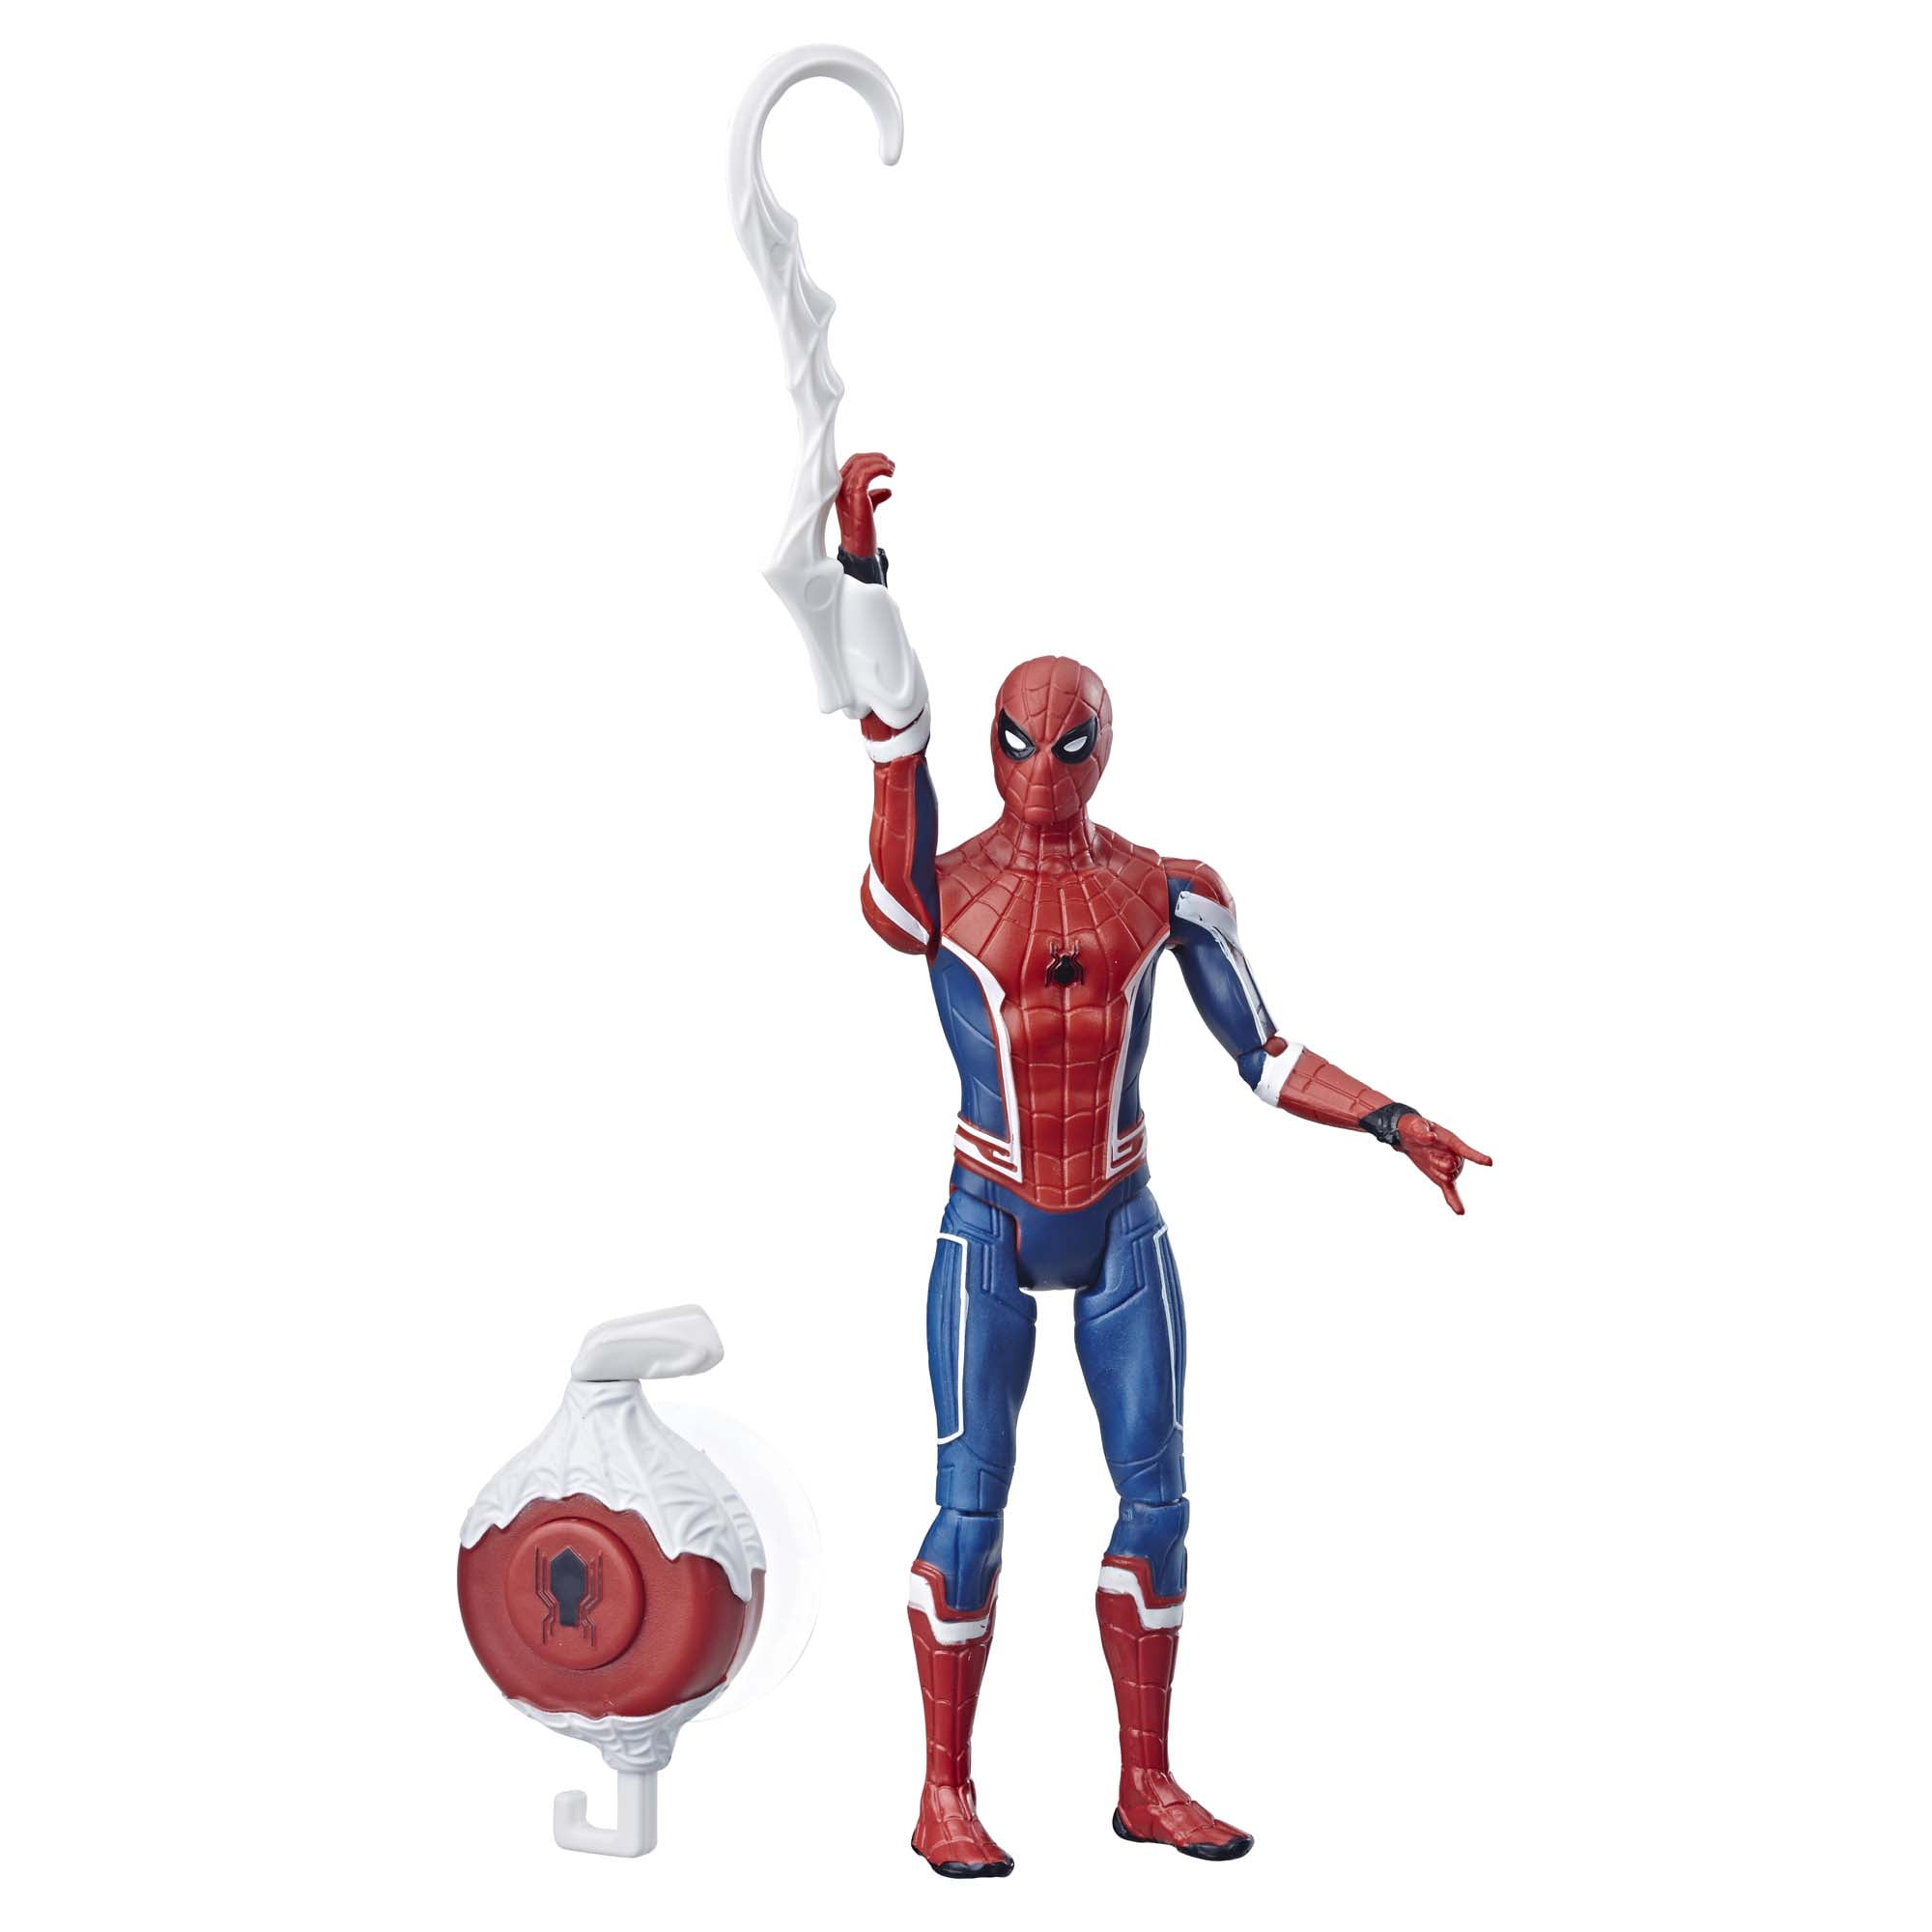 ZT Spider-Man Into The Spider-Verse 7 inches Spider-Man Action Figure